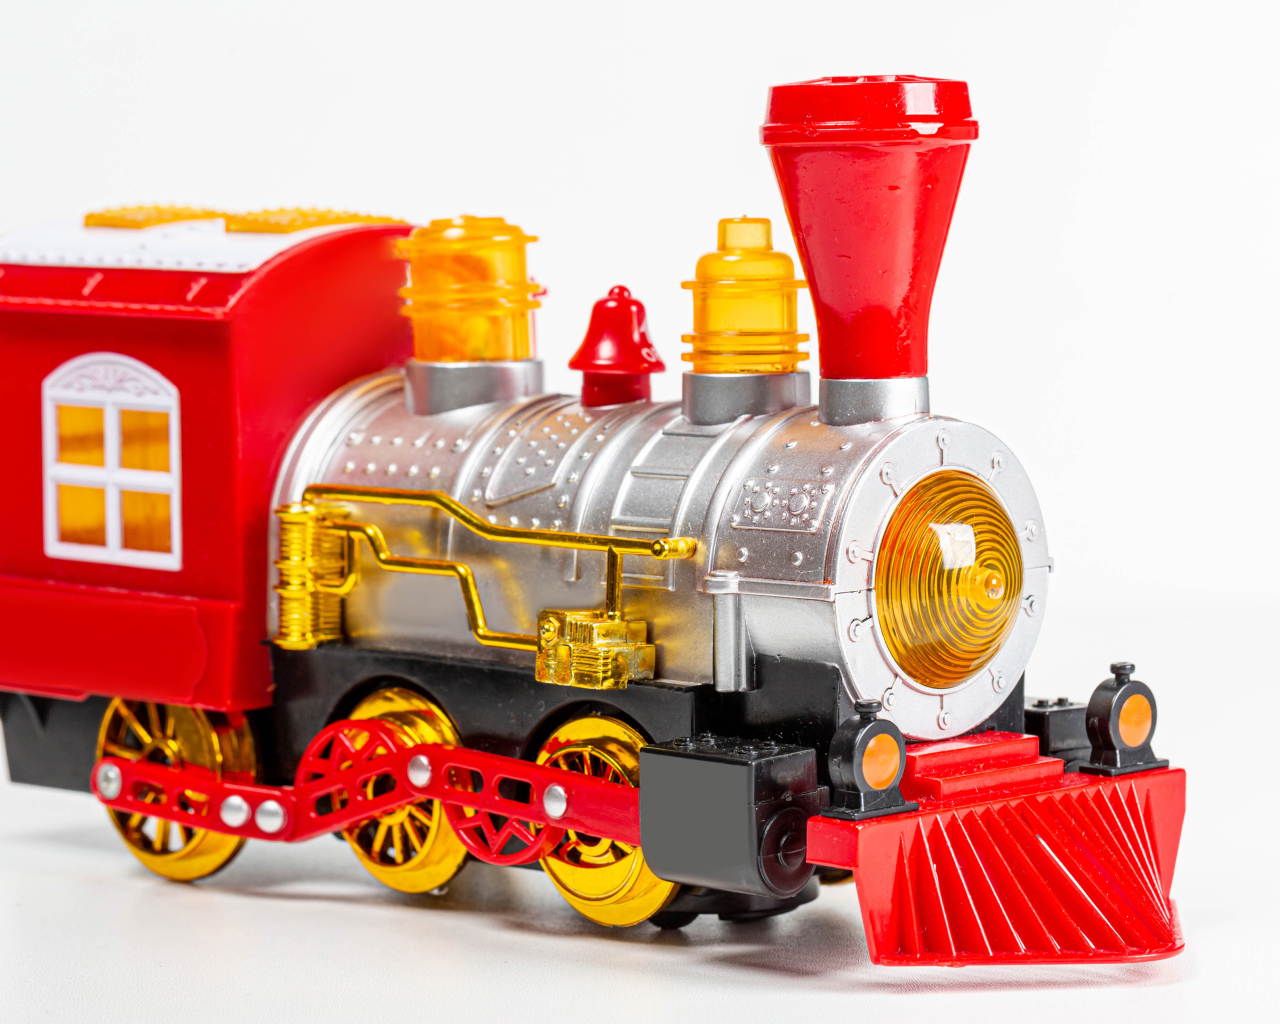 Children's toy steam engine on a white background